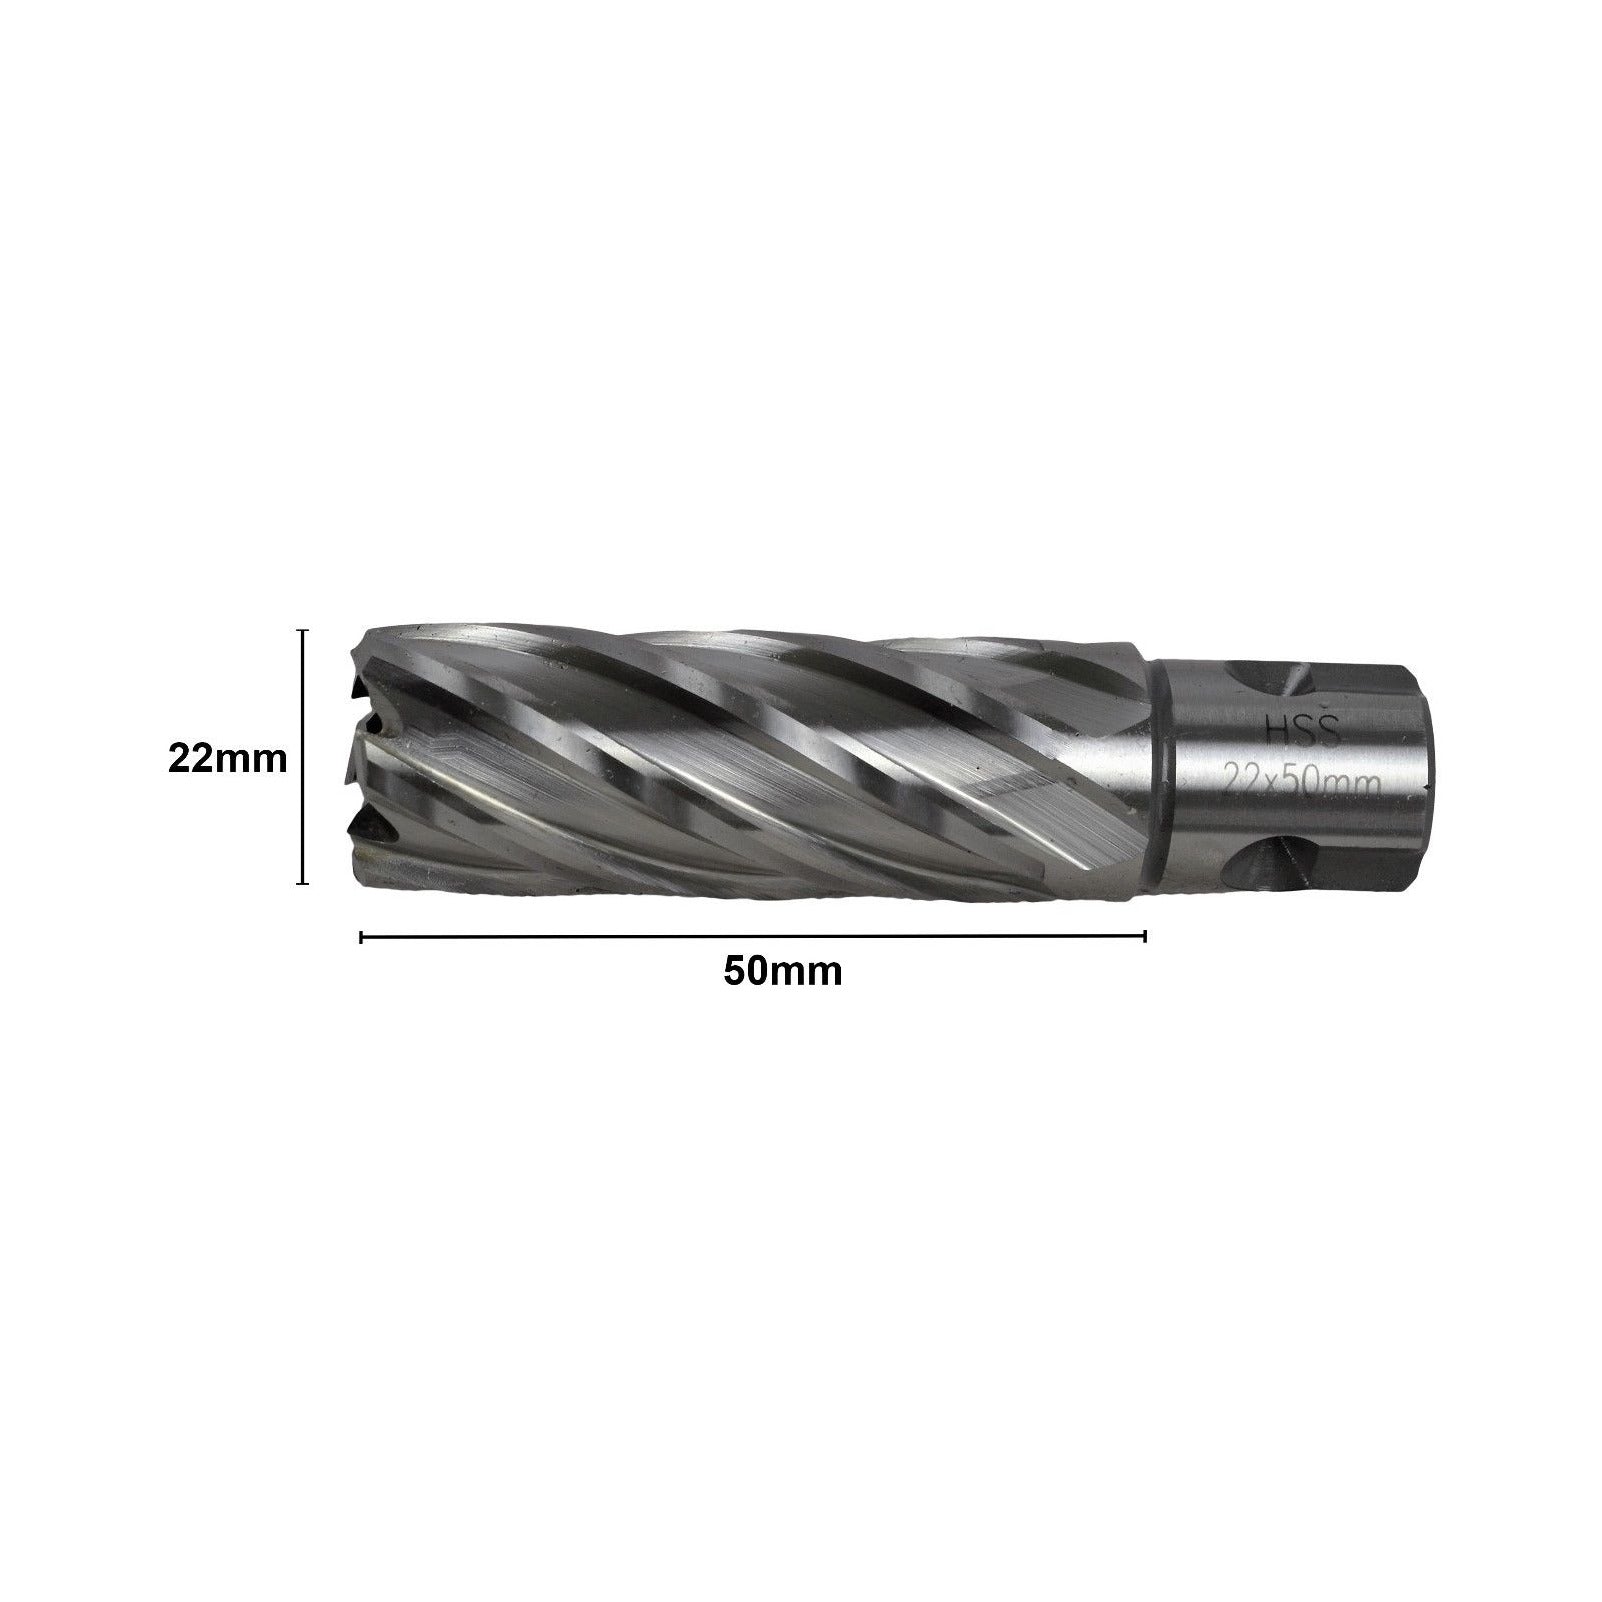 22x50mm HSS Annular Broach Cutter ; Magnetic Drill ; Rotabroach ; Universal Shank